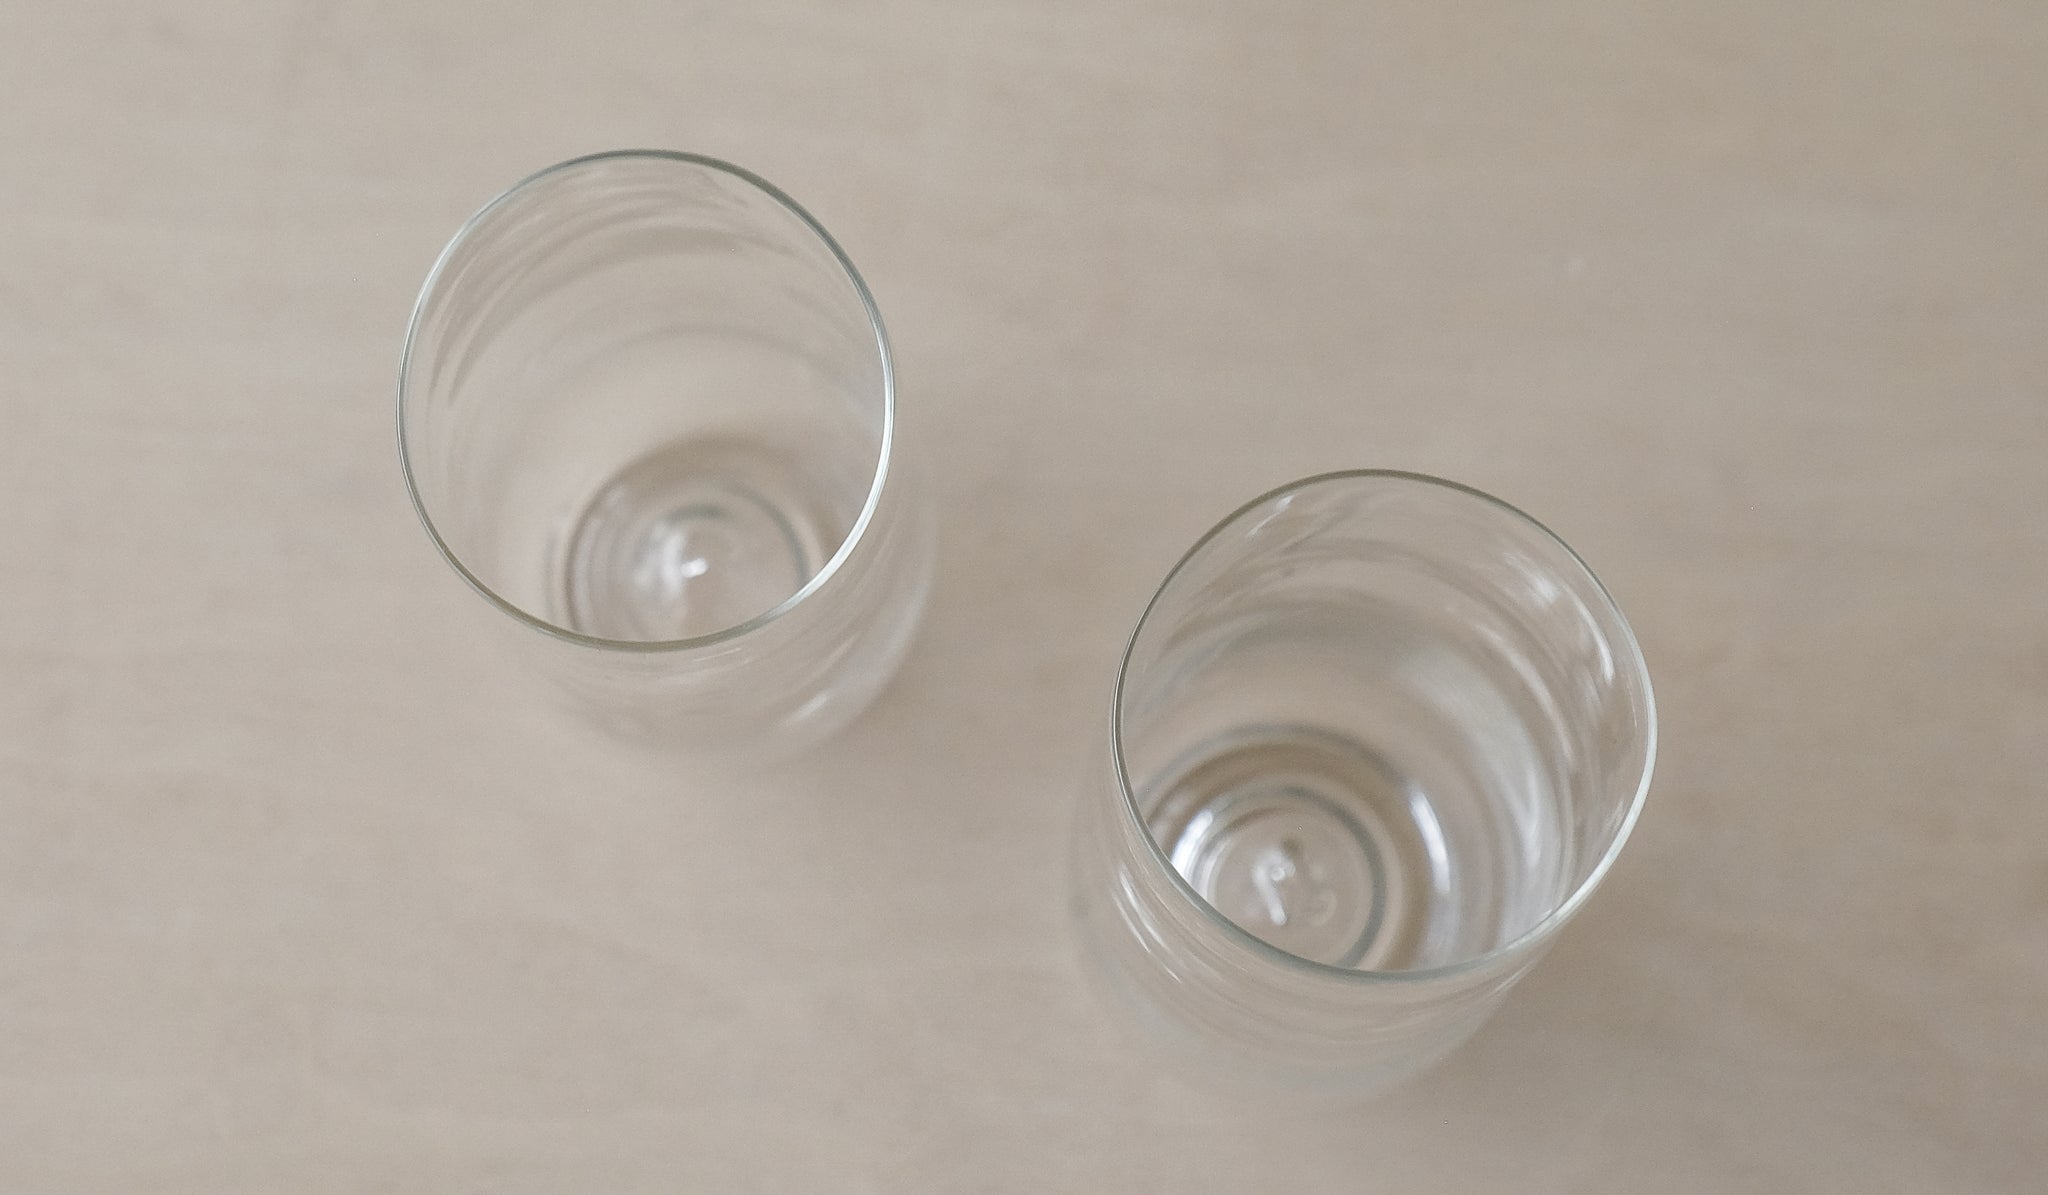 Malfatti Champagne glasses 12 oz (Set of 2) – Heath Ceramics